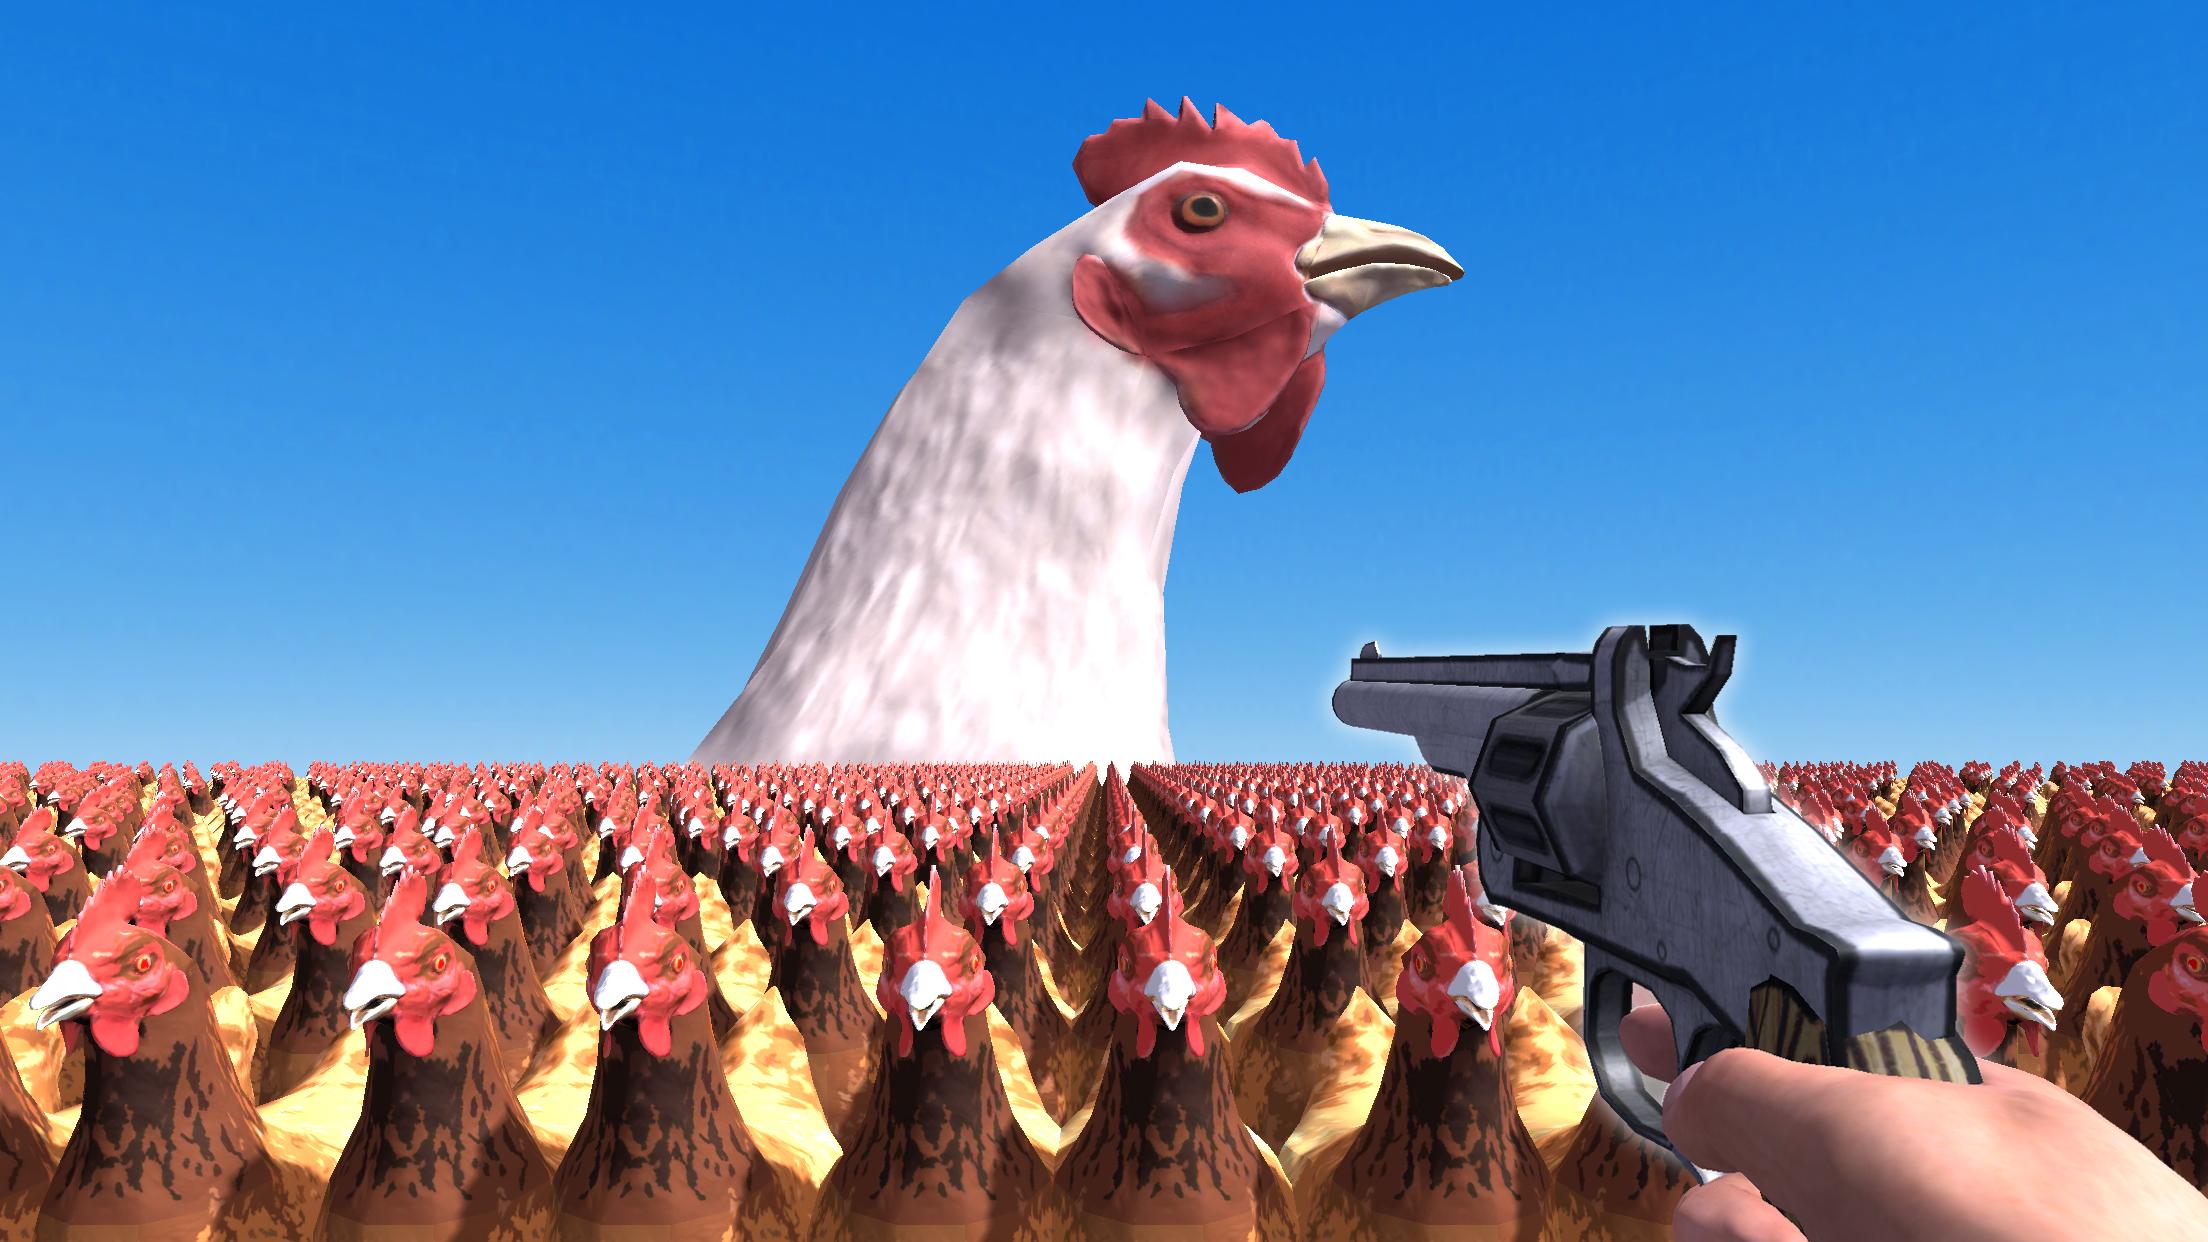 Курица с оружием. Игра стрелять в куриц из ружья.